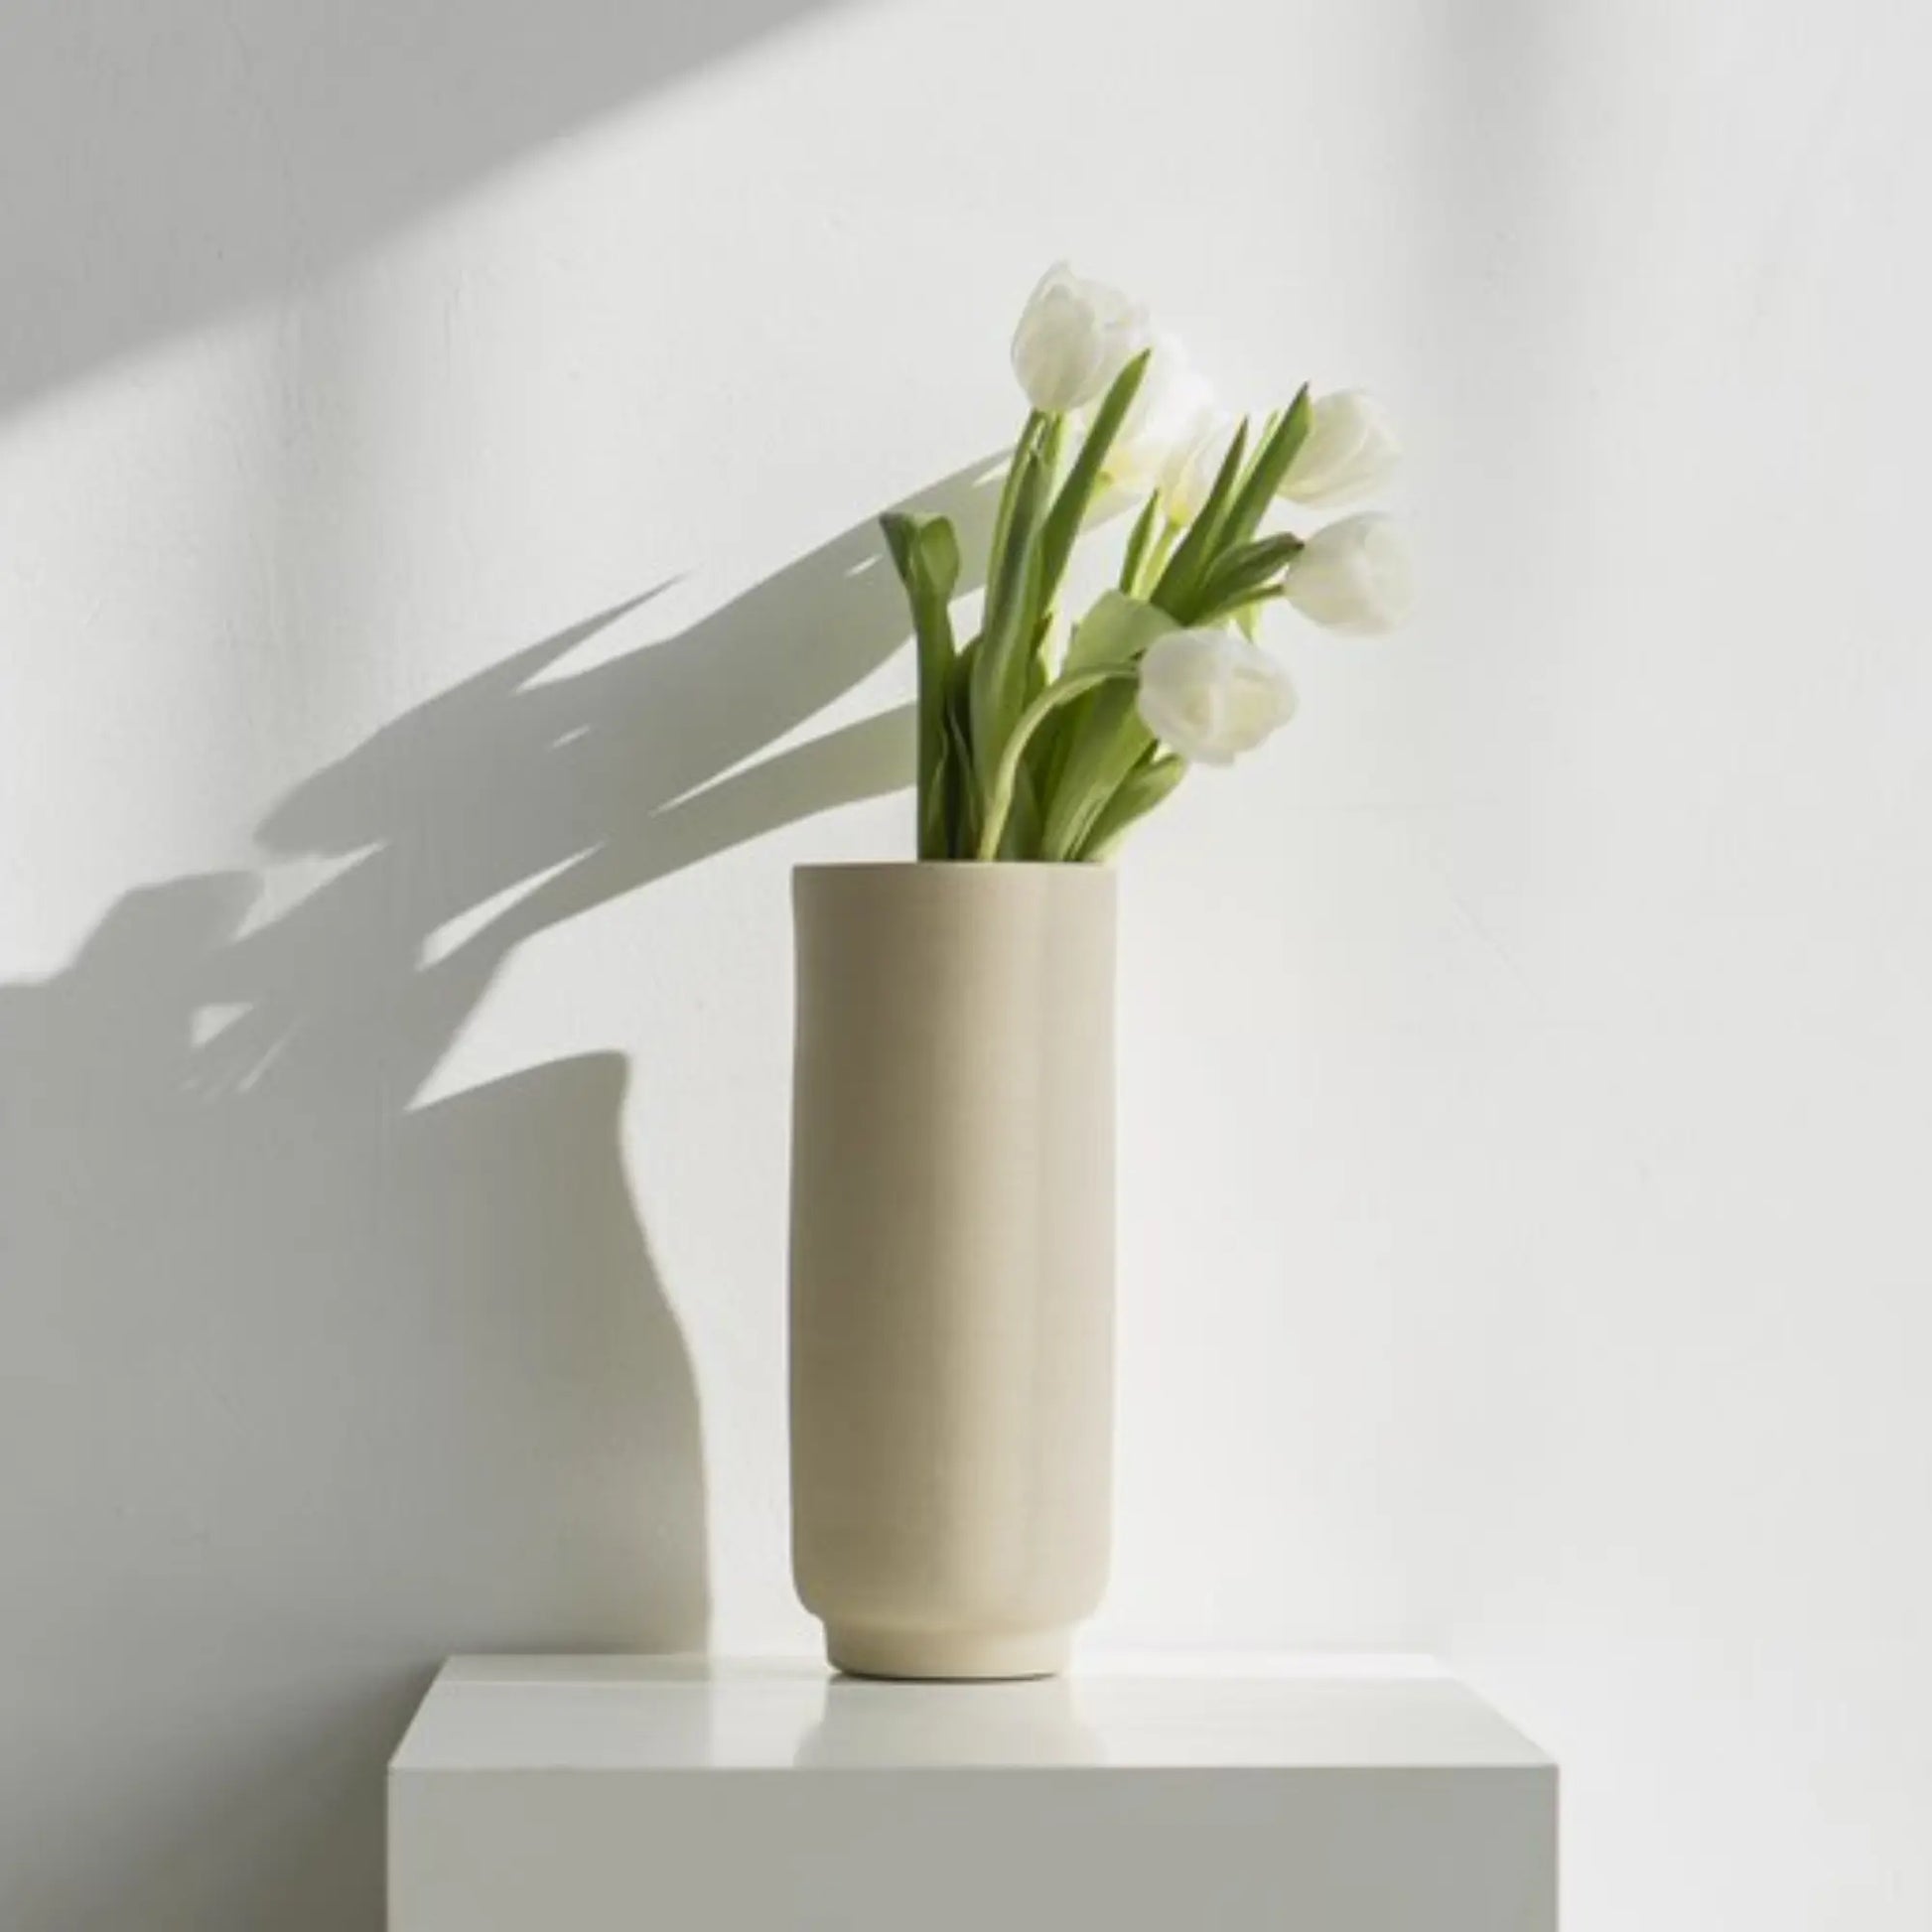 O Cactuu | Beige vaas Solvi met witte tulpen op een witte sokkel | Conceptstore Sisalla